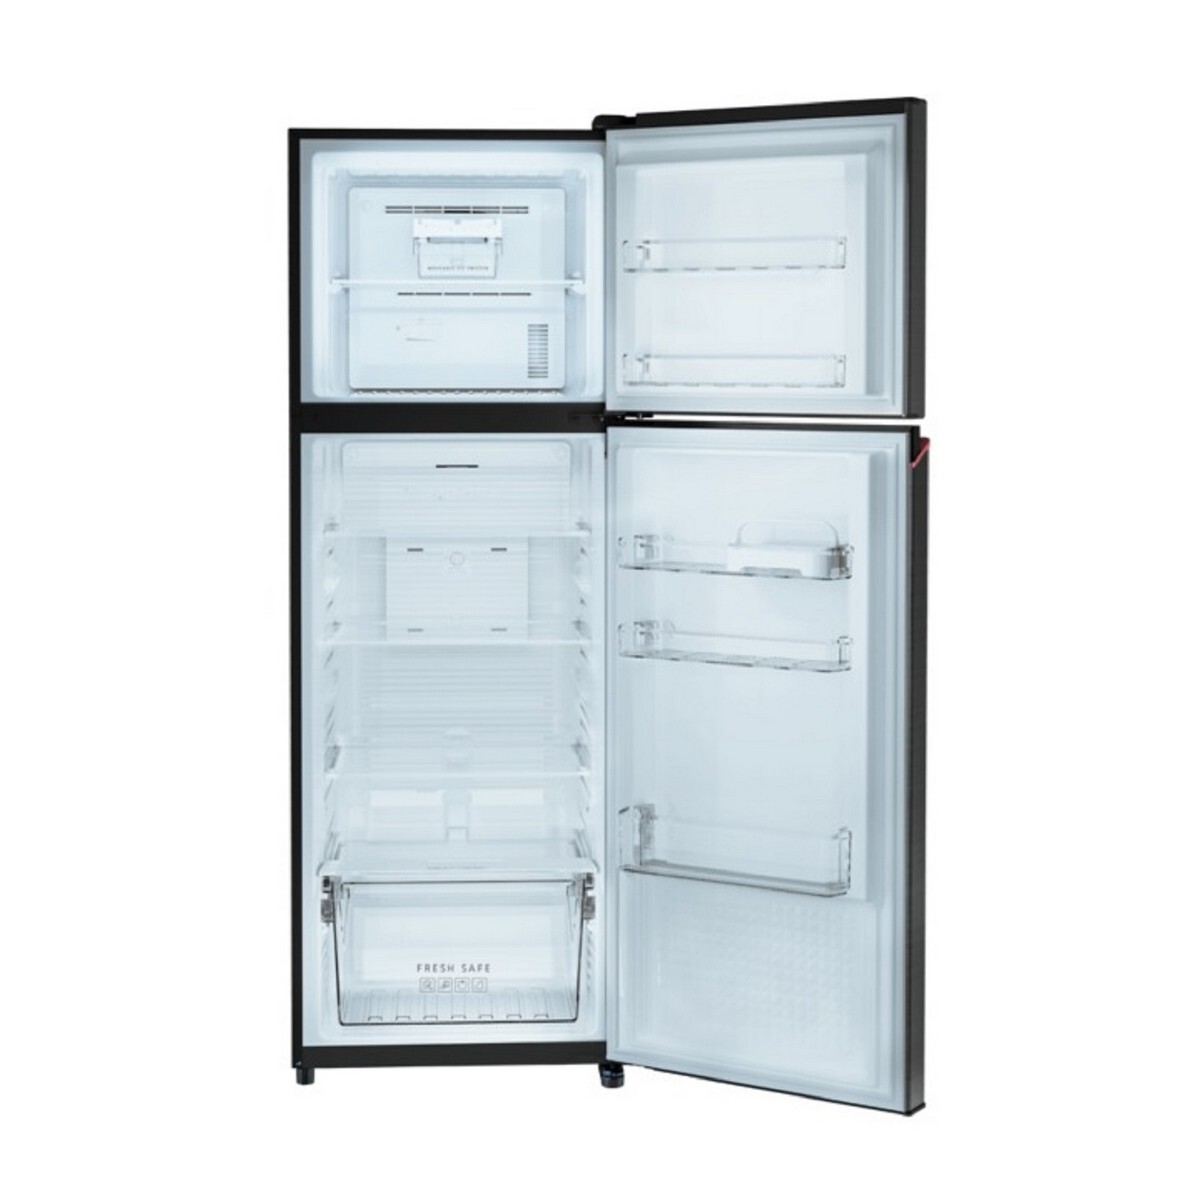 Panasonic Double Door Frost Free Refrigerator TG328CPKN 275L